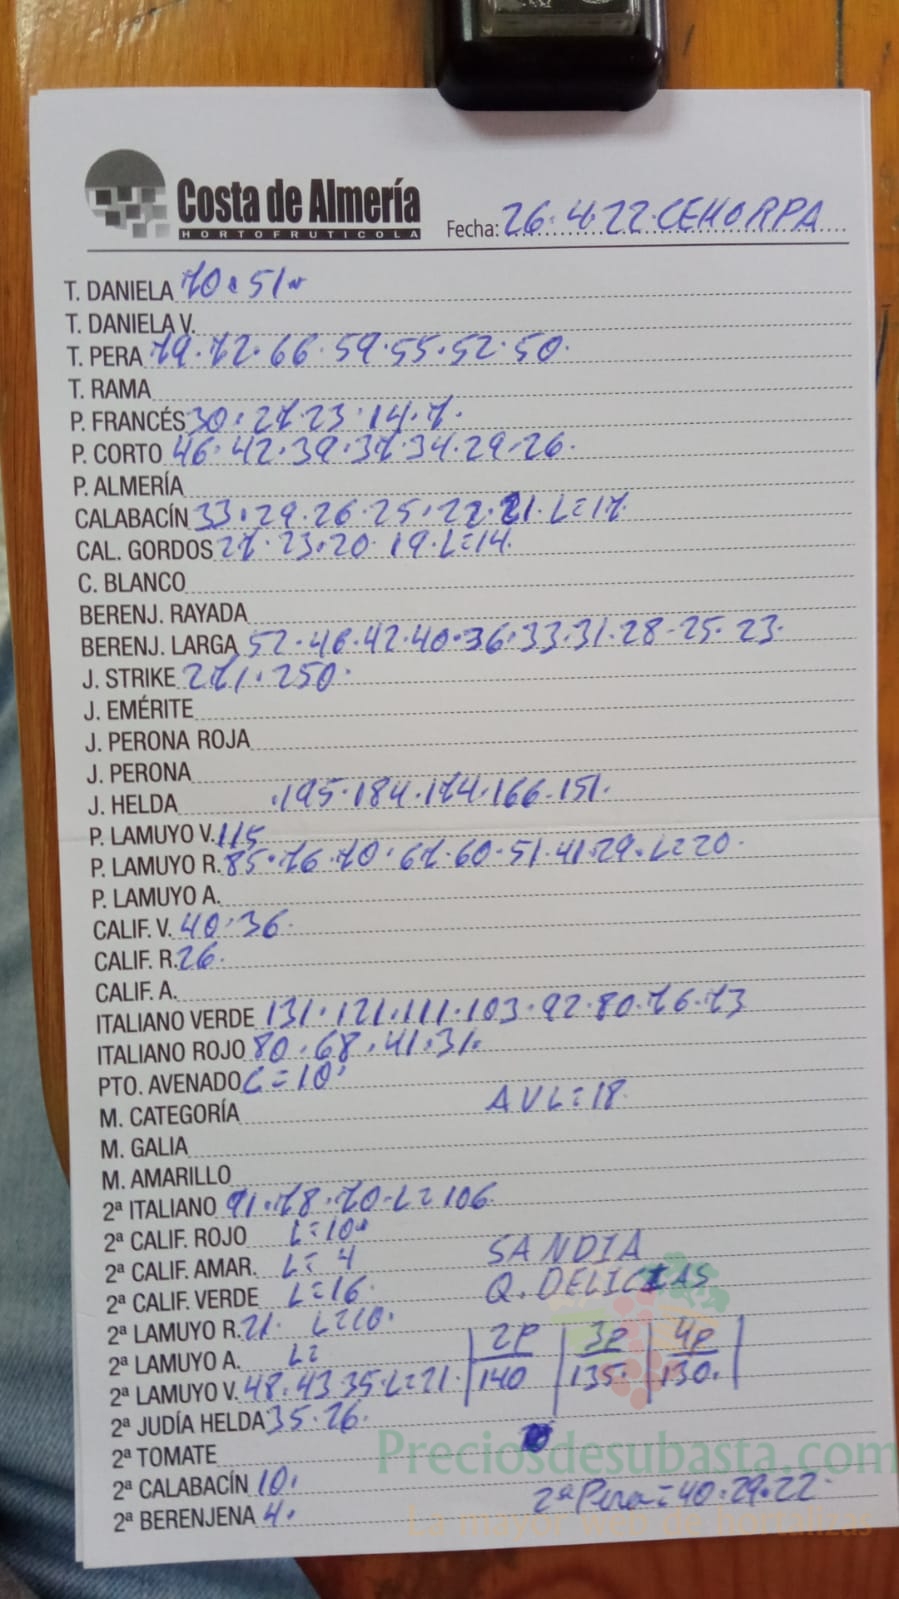 Subasta hortofrutícola Costa de Almería Cehorpa 26 de abril 2022